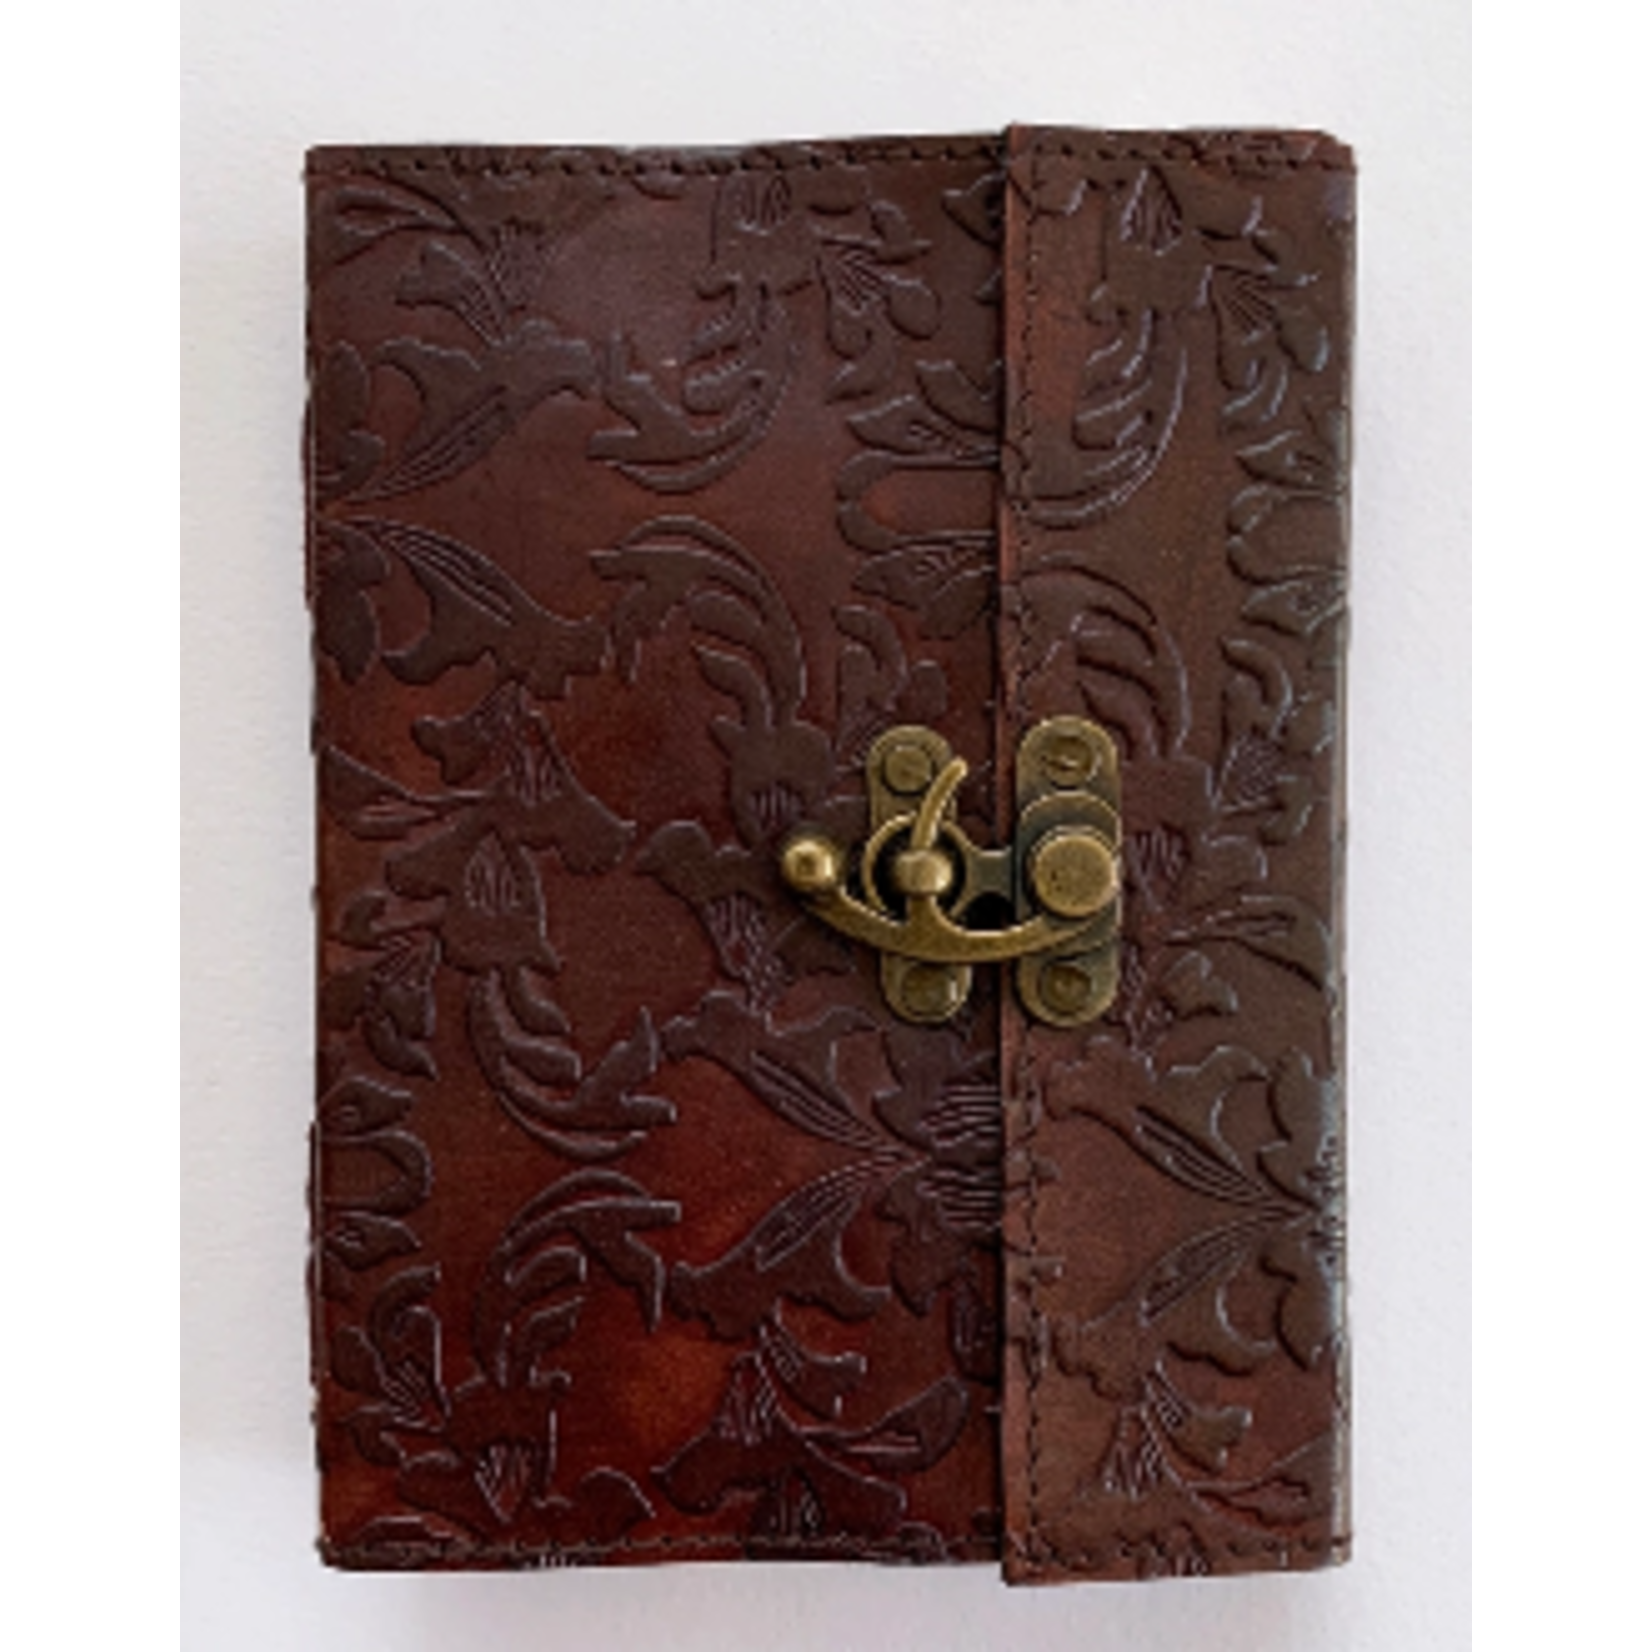 Earthbound Journals Leather Journal: Flower Garden 5 x 7